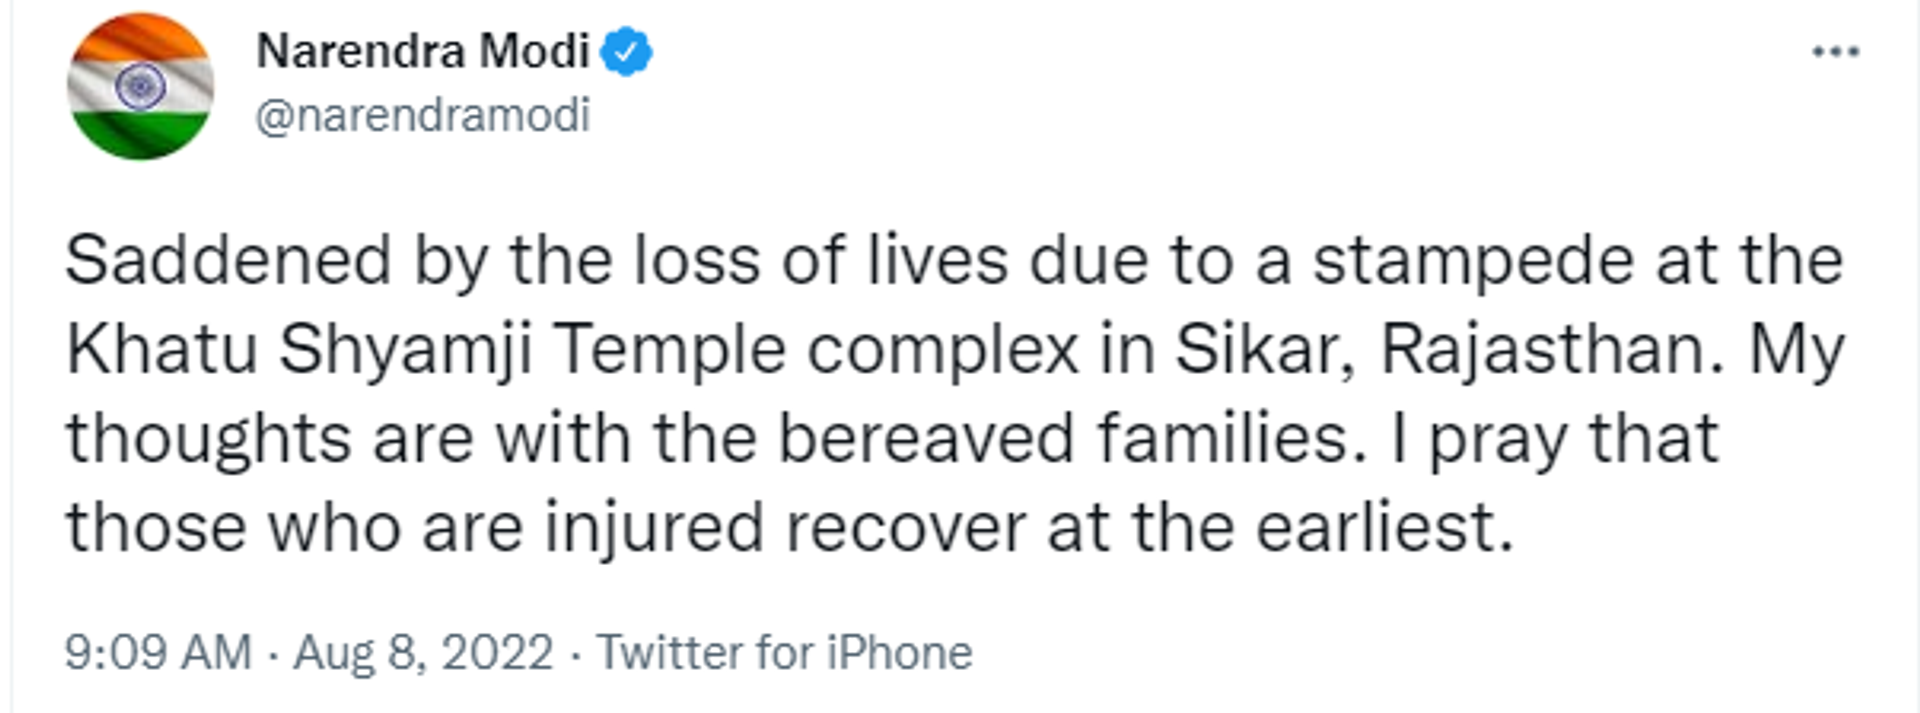 Prime Minister Narendra Modi Expressed Grief over Death During Stampede at Khatu Shyam Temple - Sputnik International, 1920, 08.08.2022